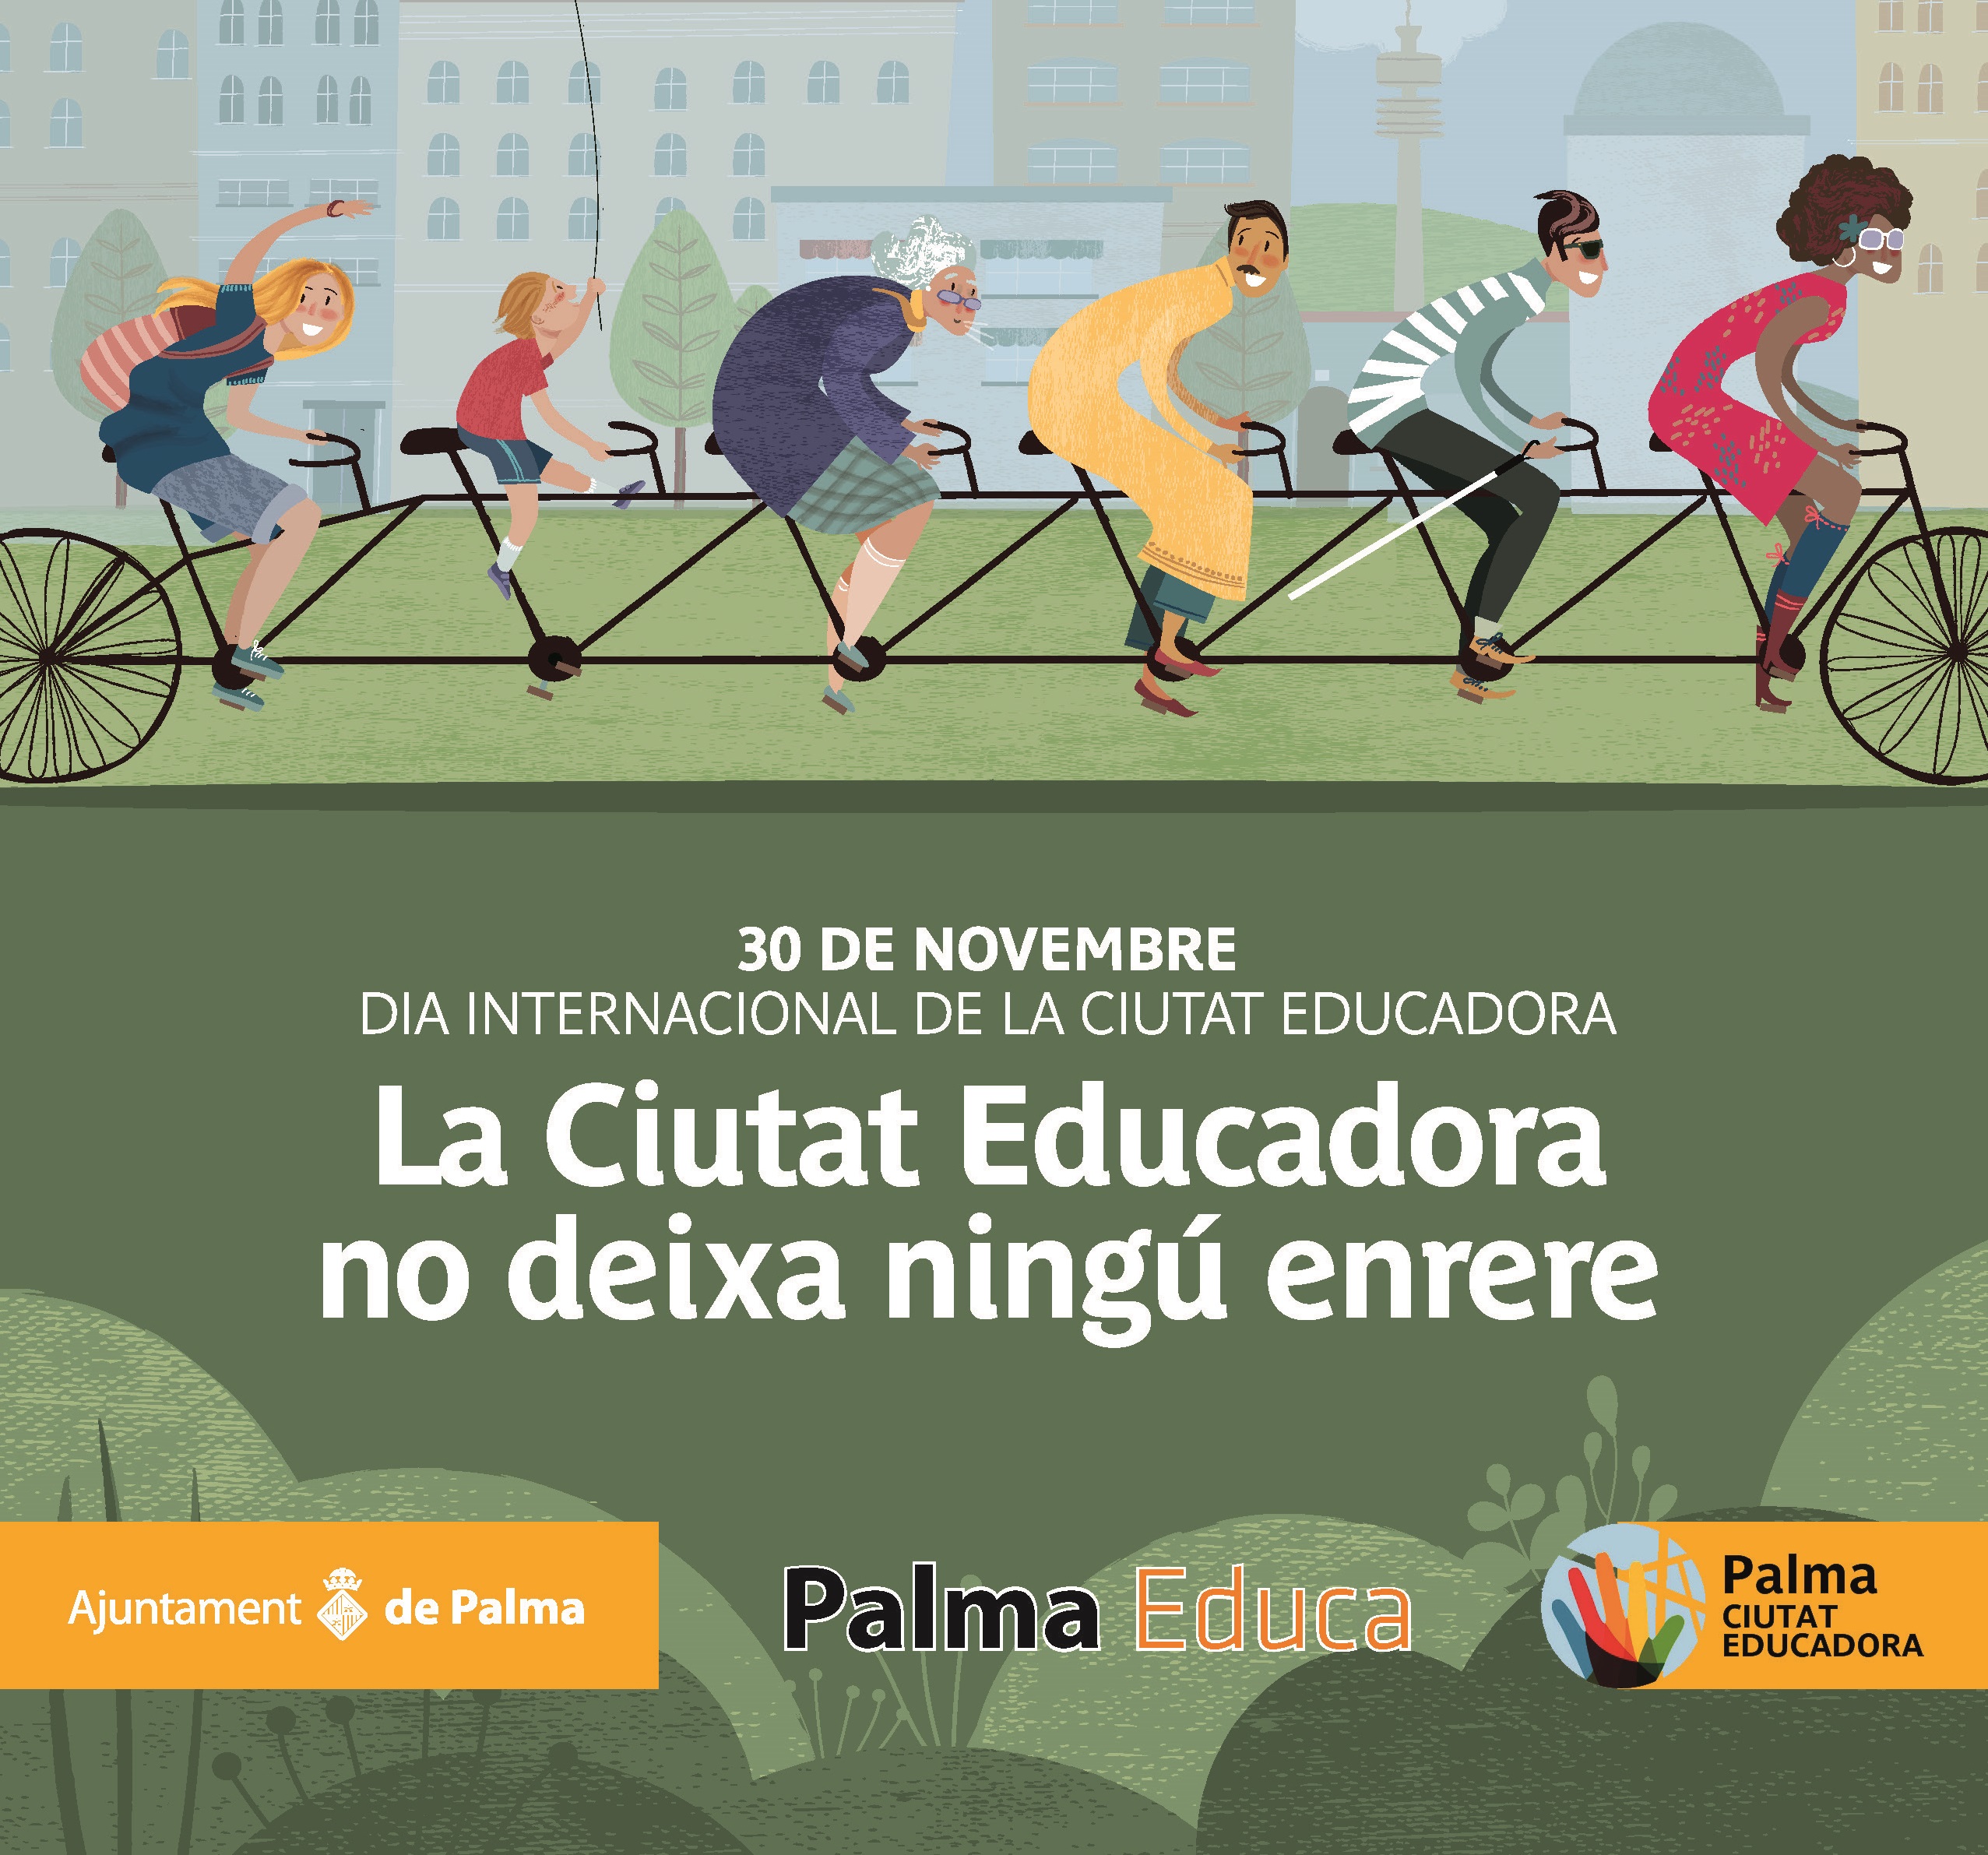 30è aniversari Dia Internacional de la Ciutat Educadora 30 de novembre